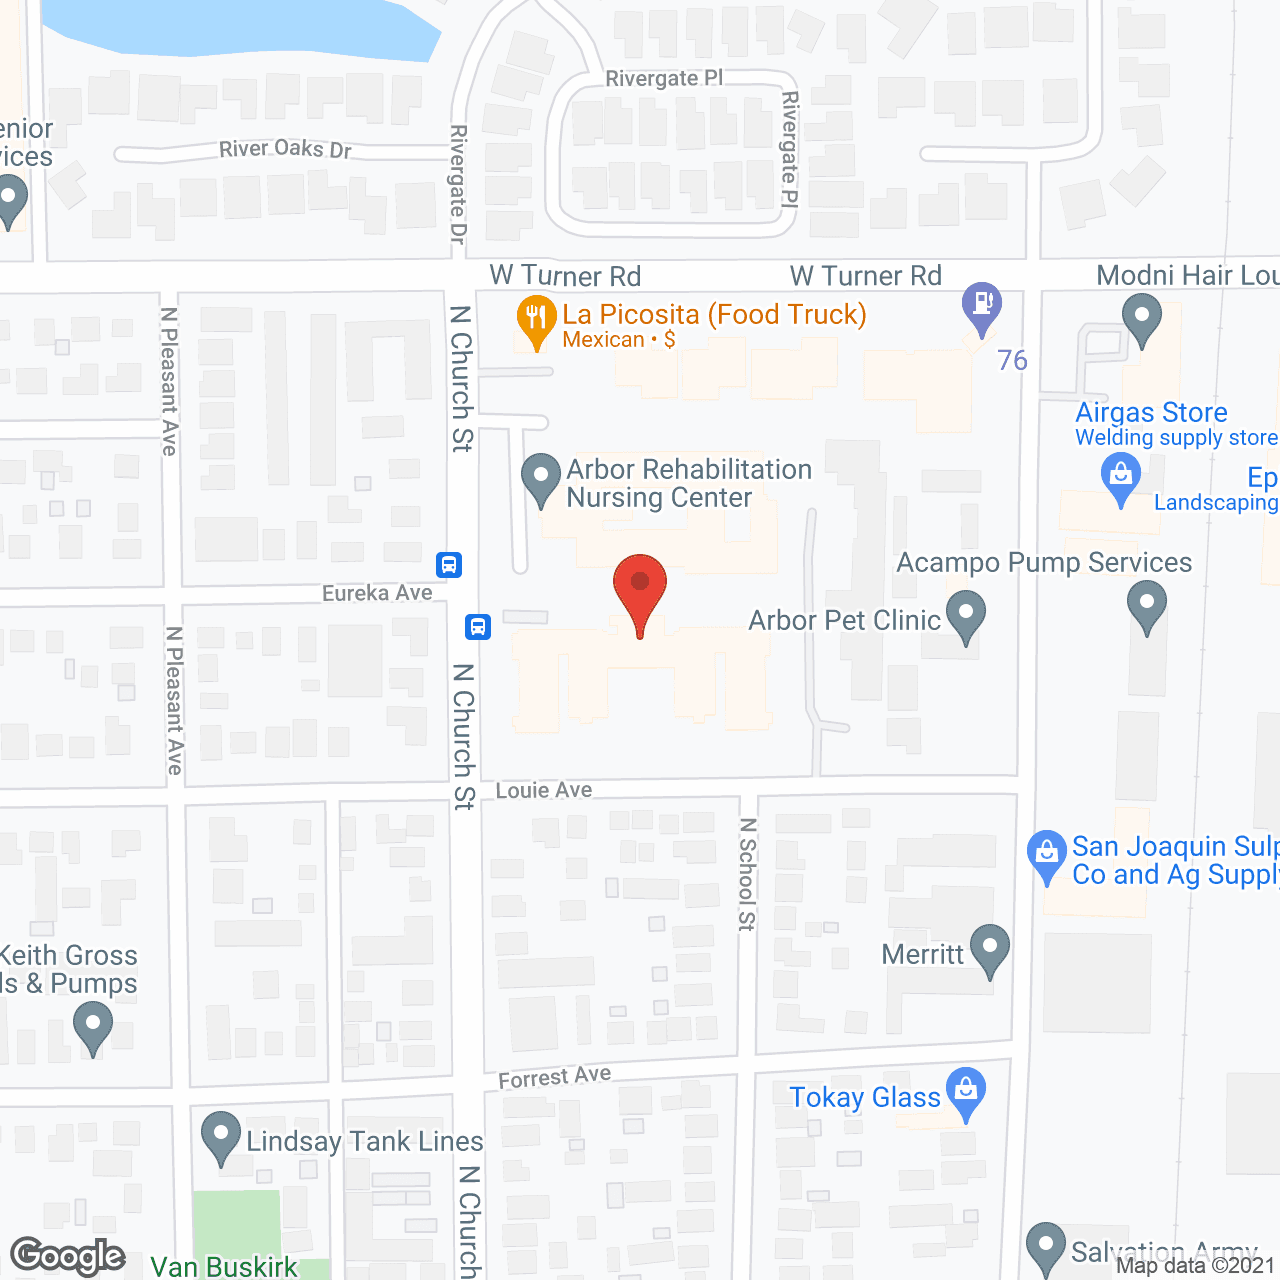 Lodi Commons in google map